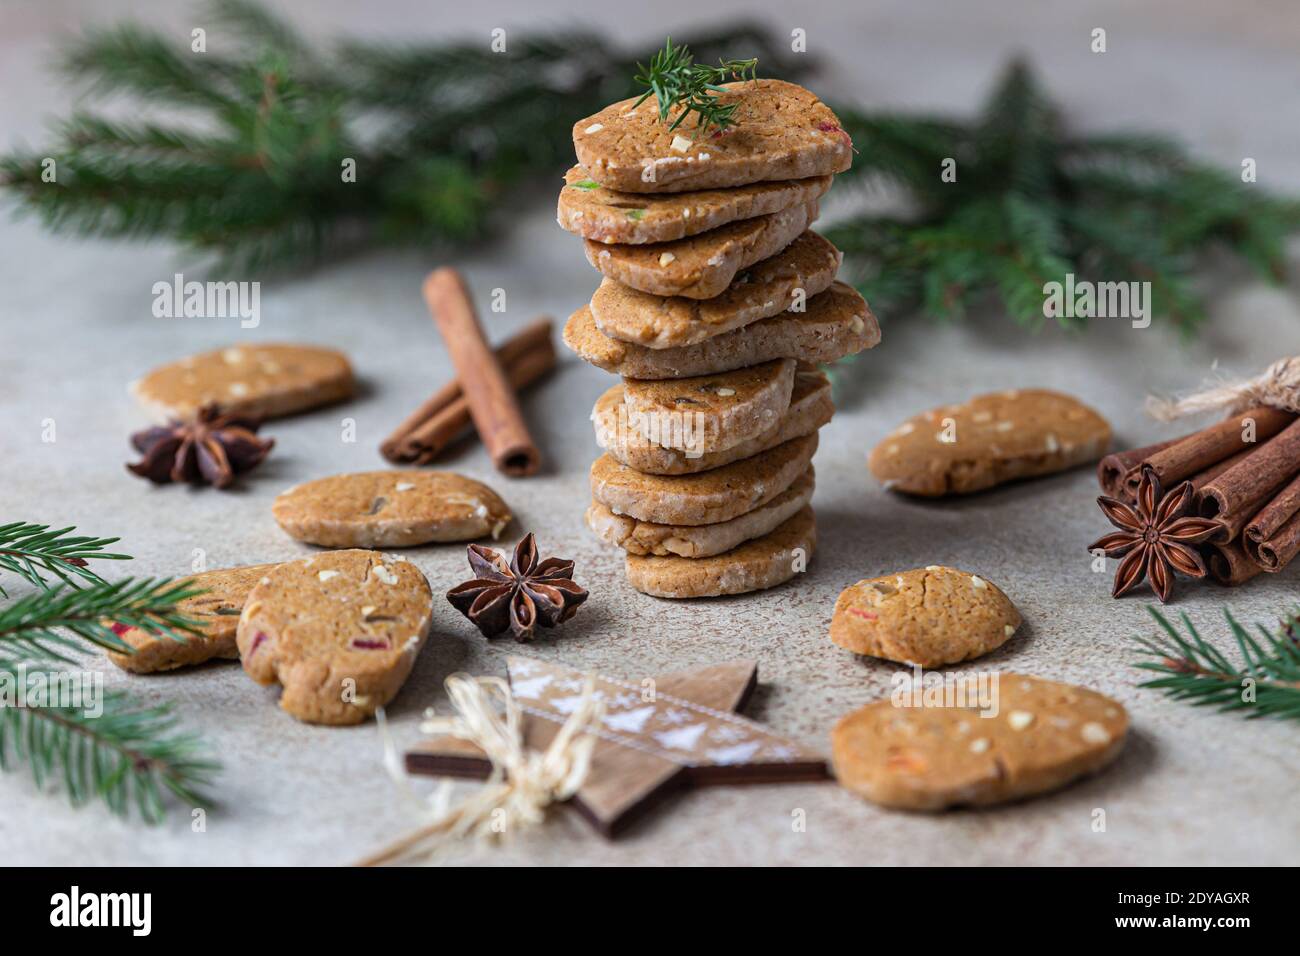 Biscuits au beurre danois épicés avec fruits confits, bâtonnets de cannelle et anis, fond clair. Fond de Noël ou de nouvel an avec branche de sapin Banque D'Images